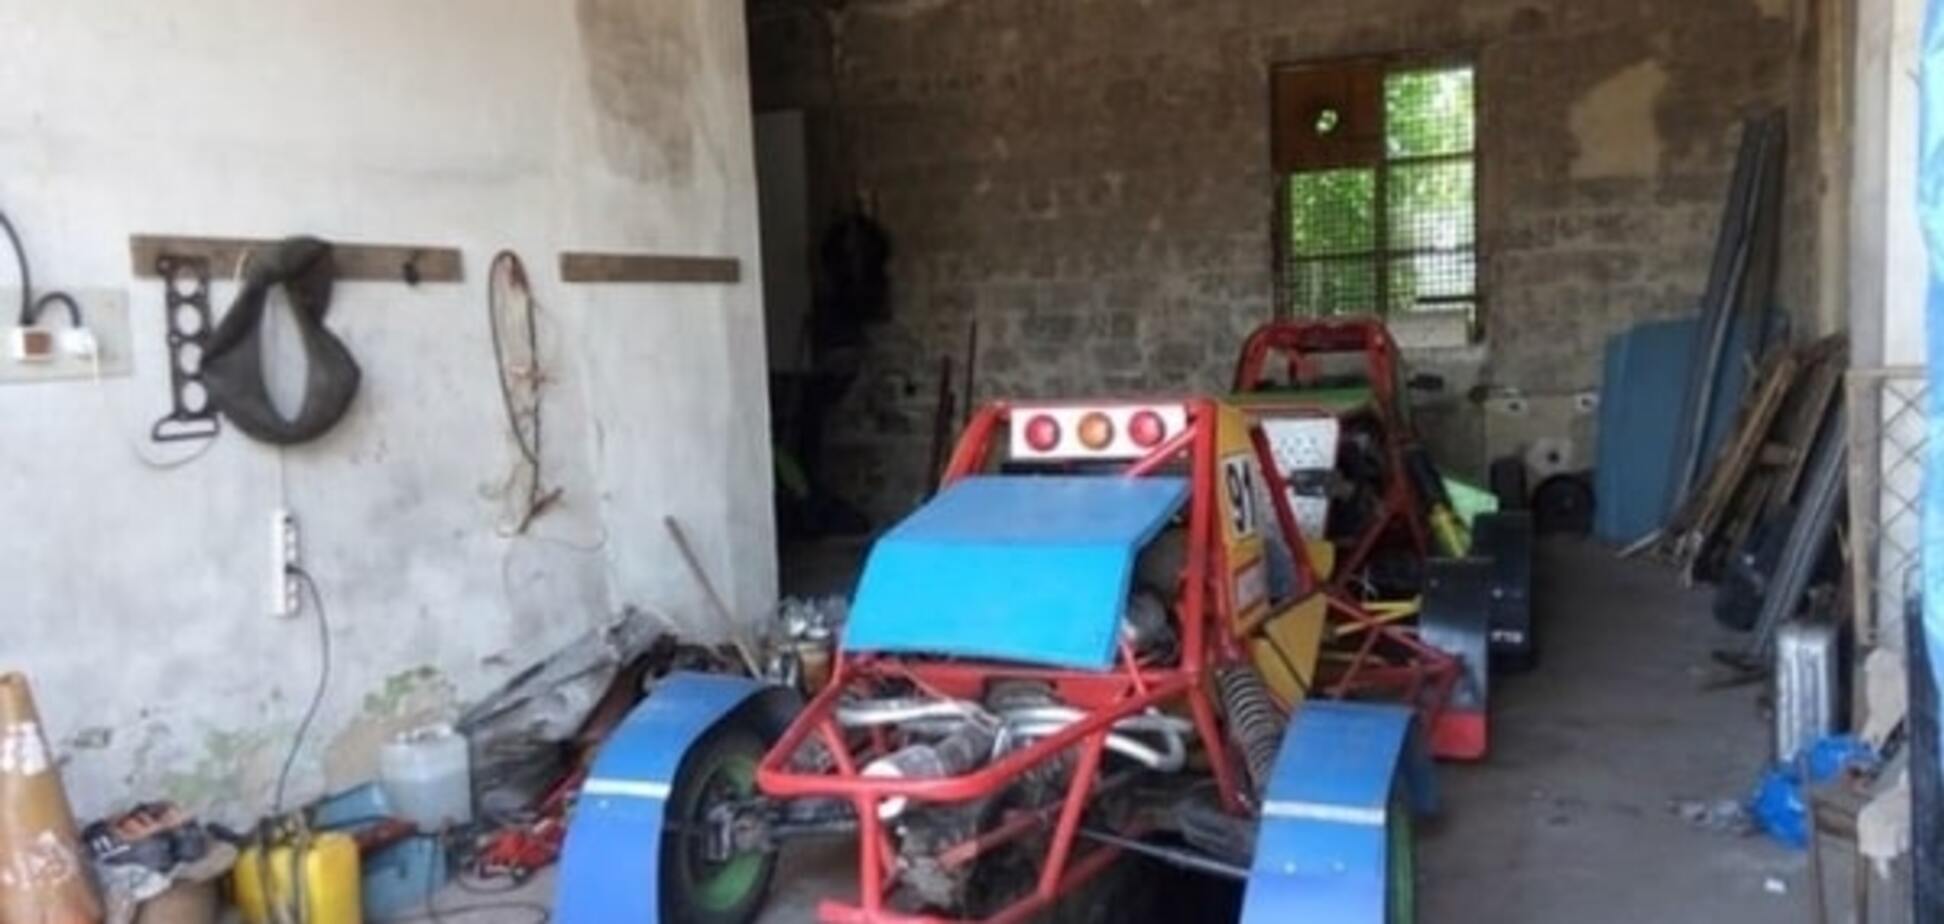 Семья из Днепра создает уникальные гоночные машины. Фото